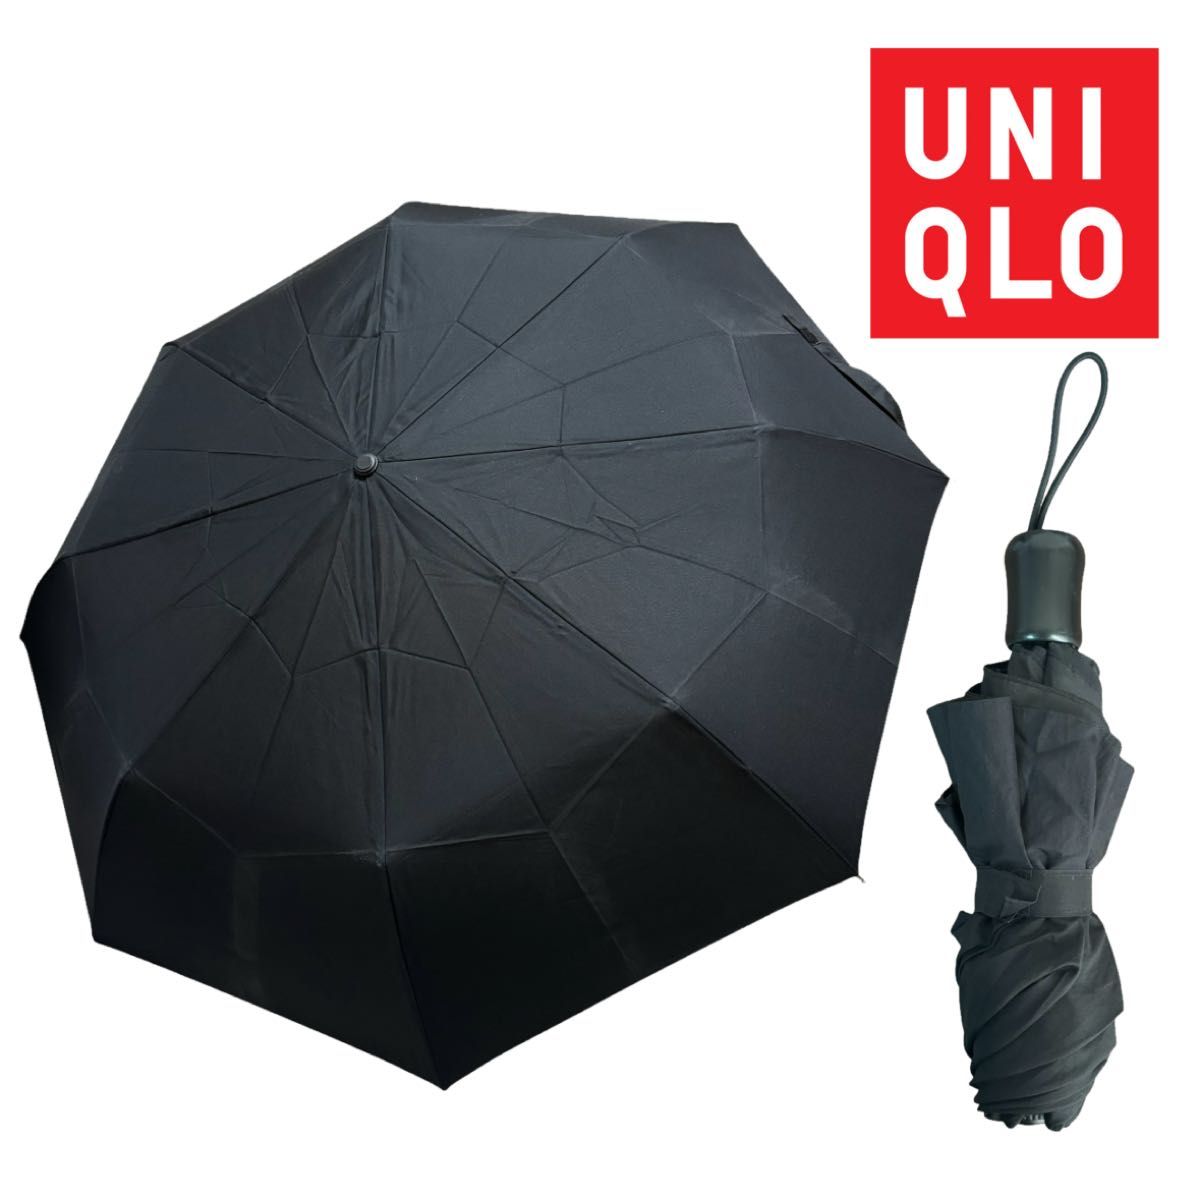 ユニクロ UNIQLO UVカットコンパクトアンブレラ 親骨55cm 折り畳み傘